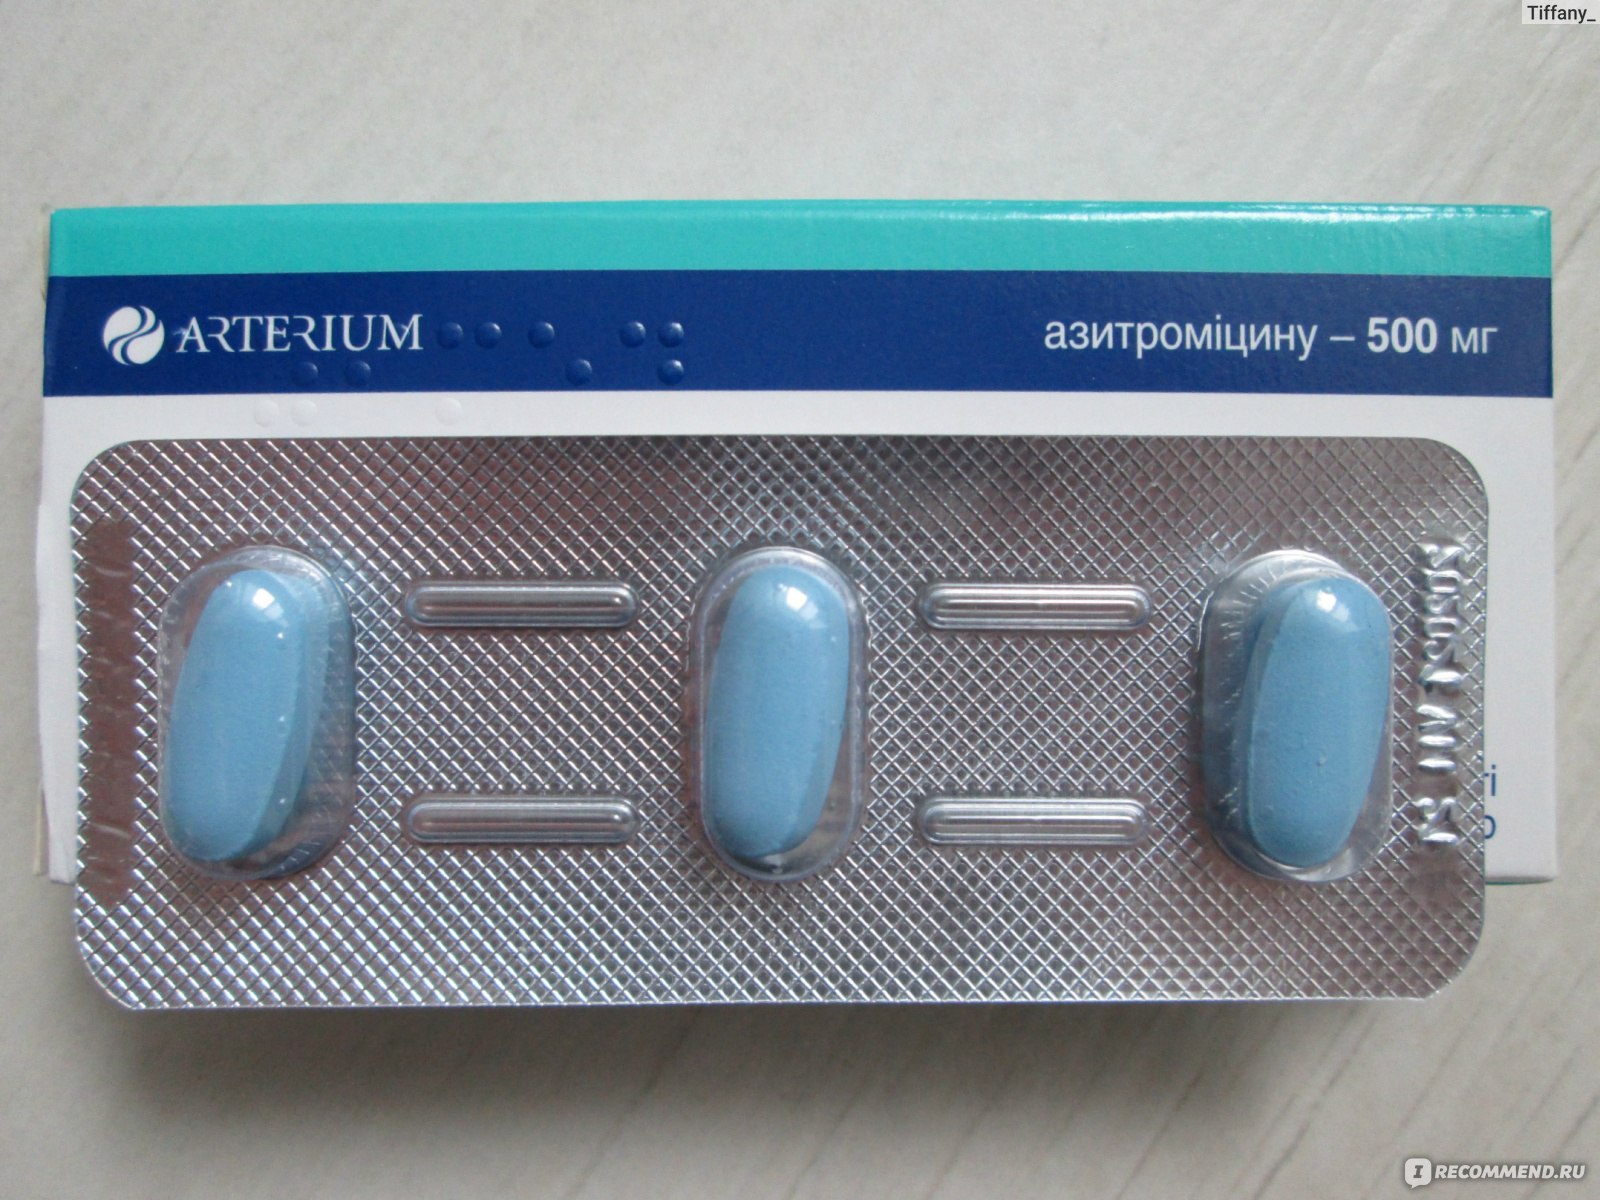 Антибиотик который пьют 3. Антибиотик три таблетки. Антибиотик голубые таблетки. Антибиотики в капсулах. Три таблетки в упаковке.